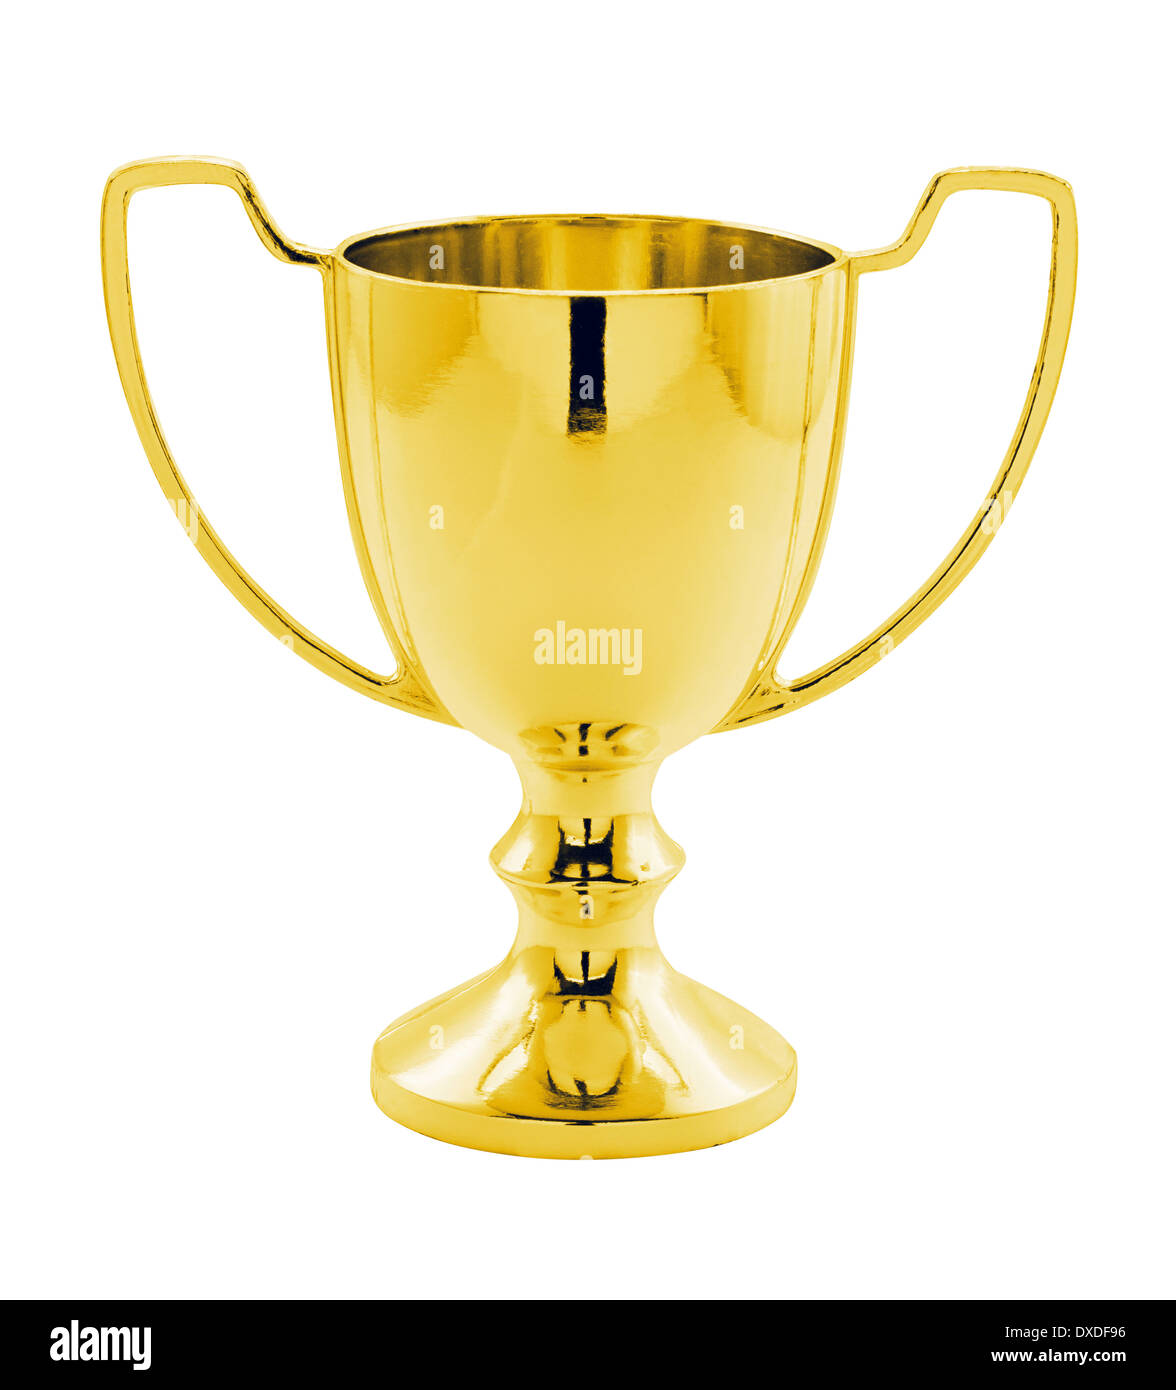 Eine Gold-Gewinner Trophäe gegen einen weißen Hintergrund tolles Konzept für Leistung, Erfolg oder einen Wettbewerb oder Award zu gewinnen. Stockfoto